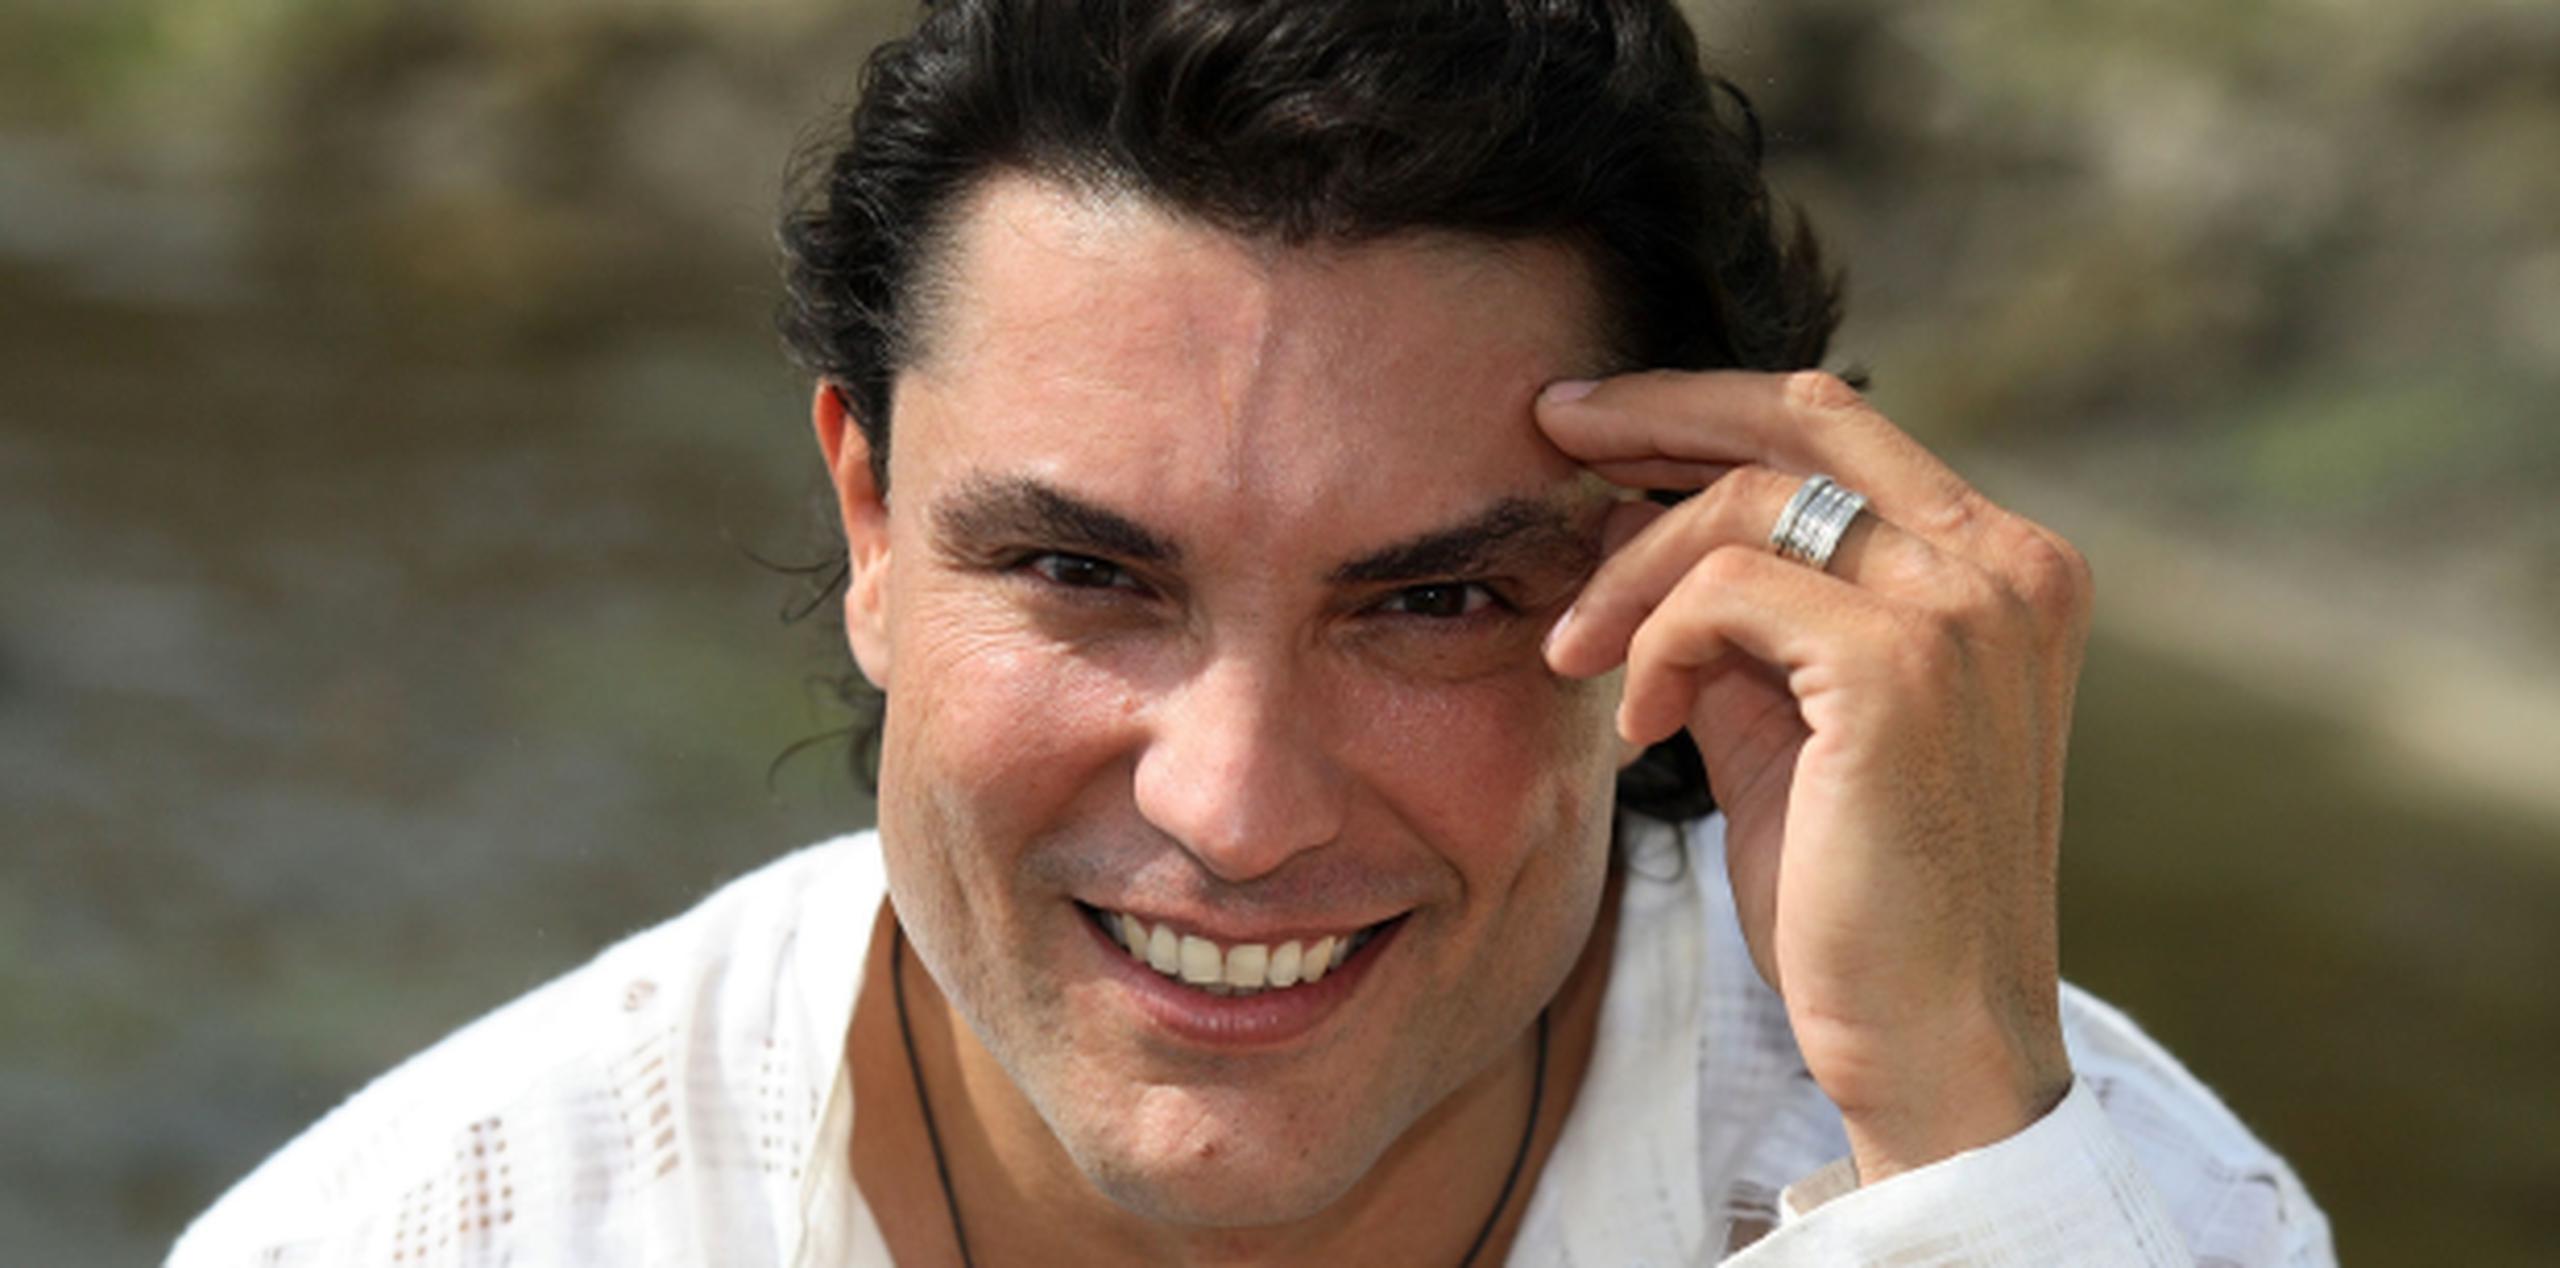 El actor regresó recientemente a la actuación con la serie “Prisioneras del silencio”, la cual se está realizando en México. (Archivo)